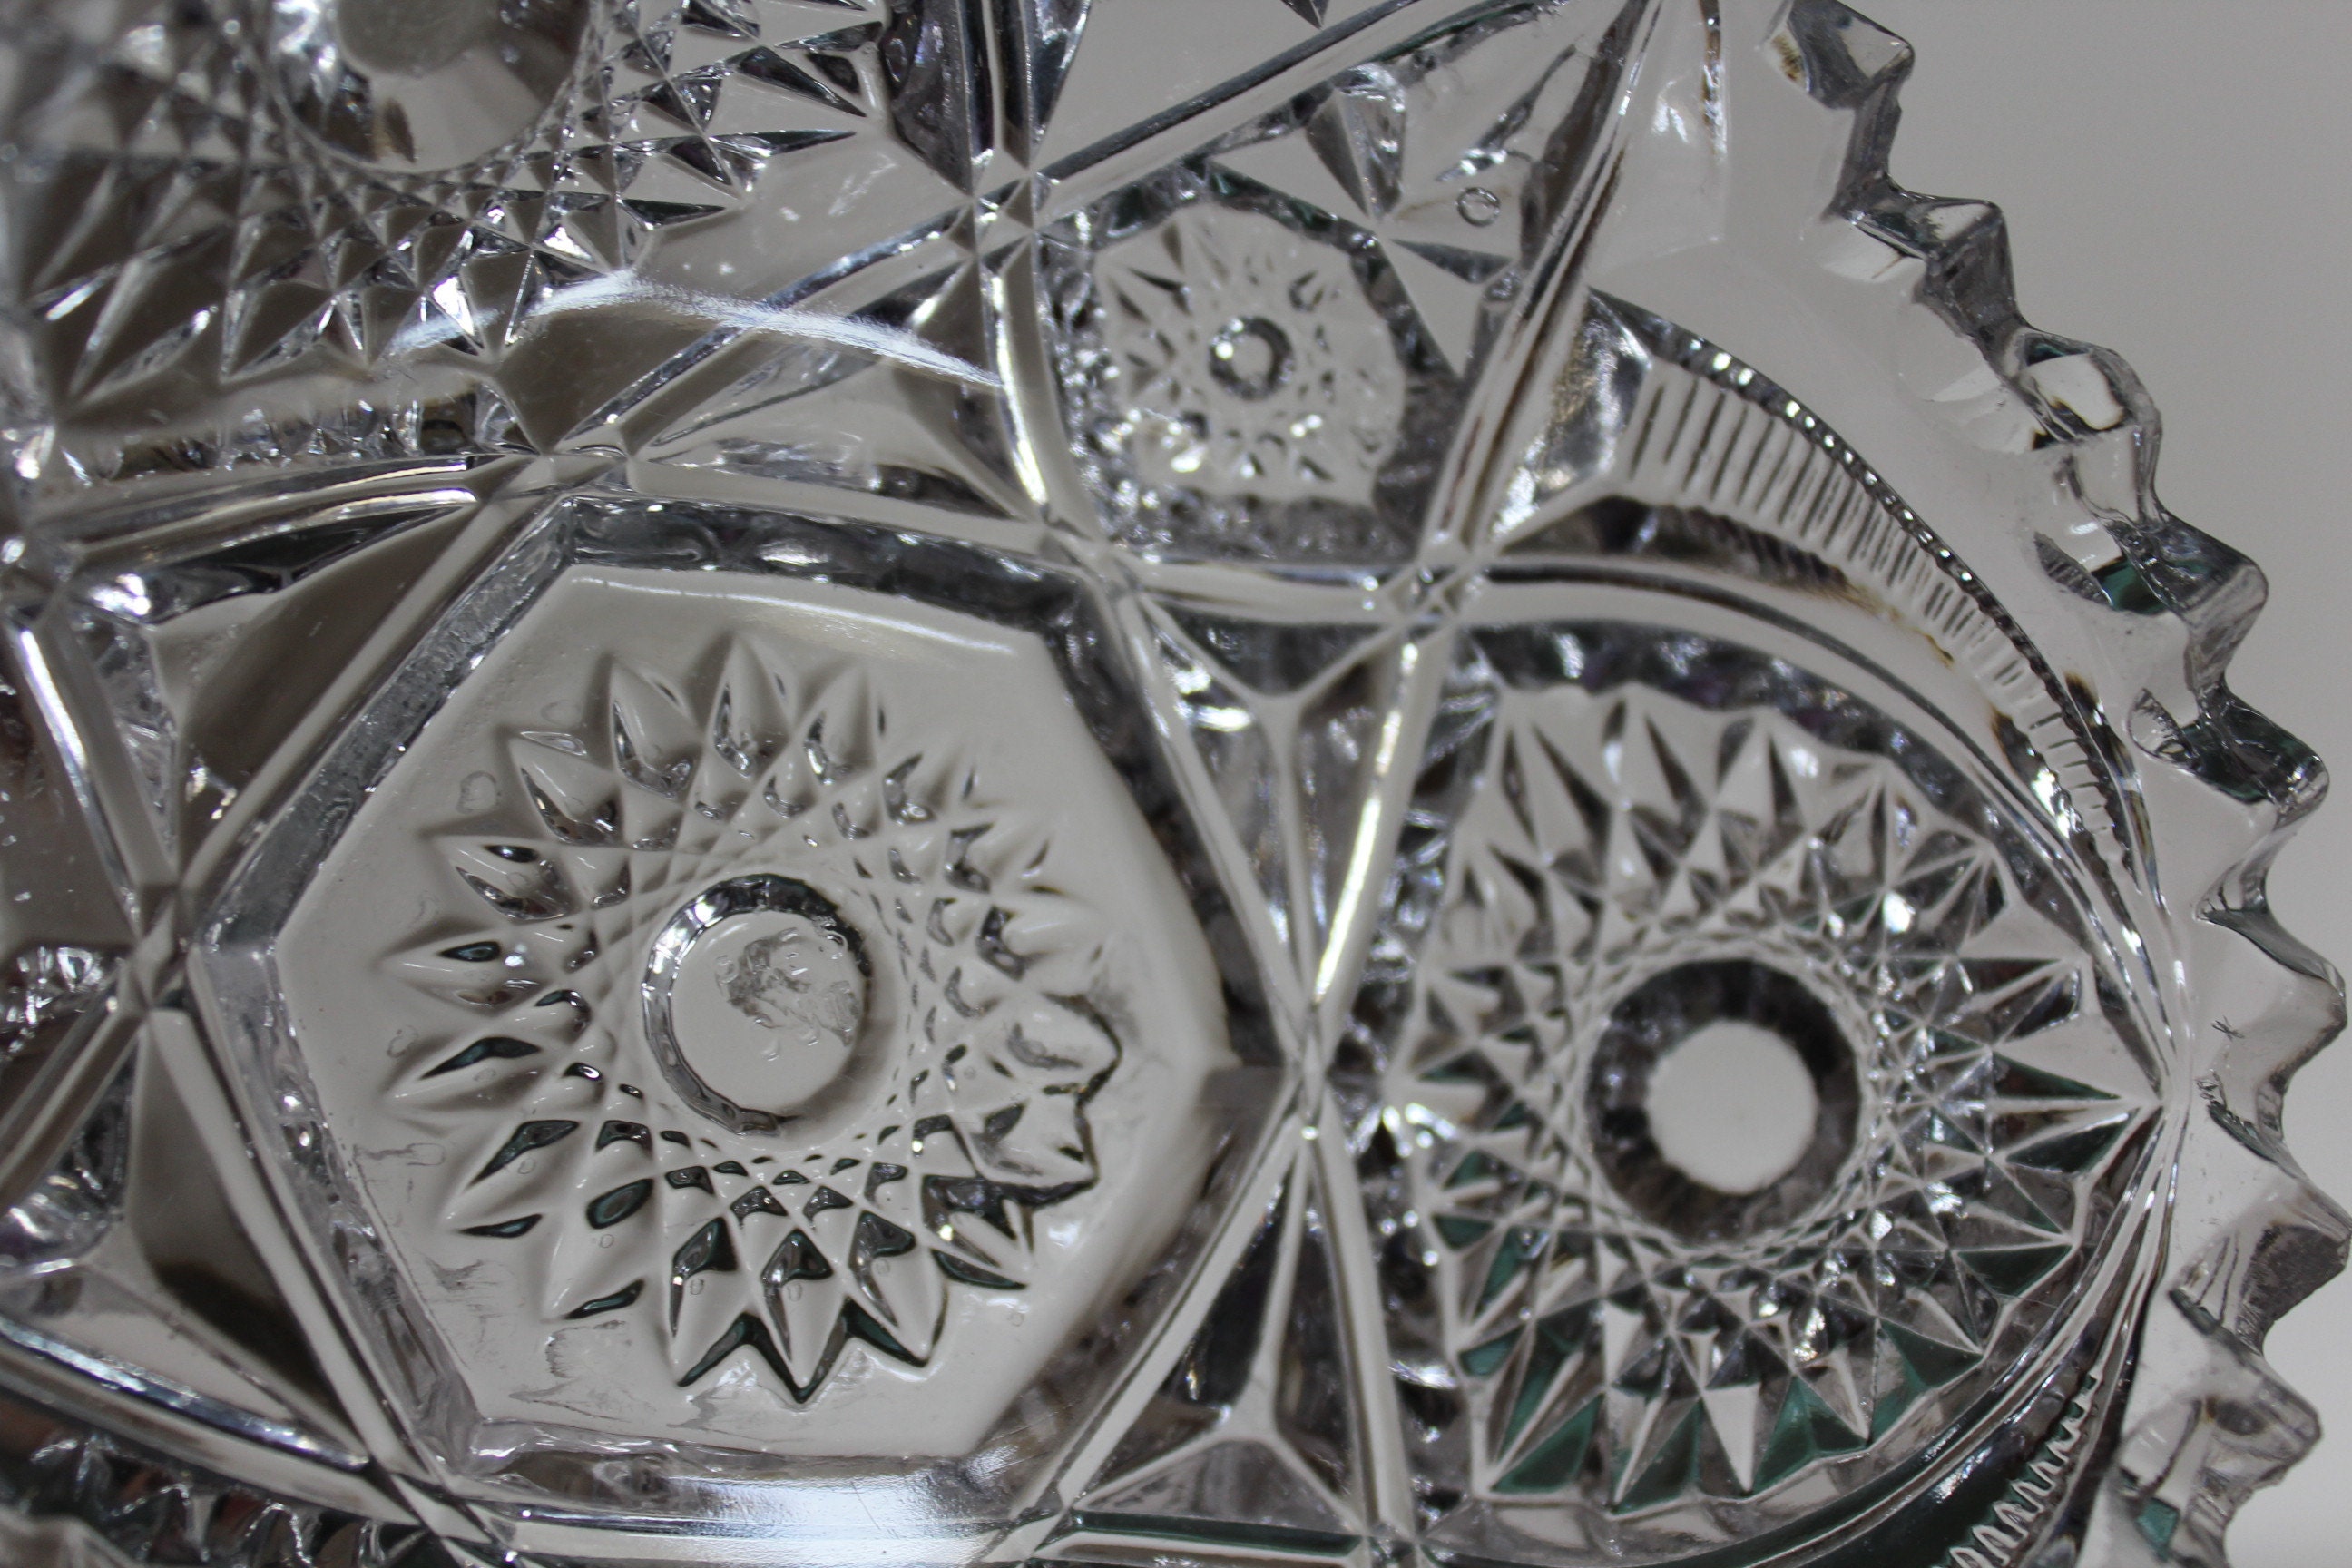 Mosaic Glass Plates & Bowls at Rustic ⋆ Blowing Rock